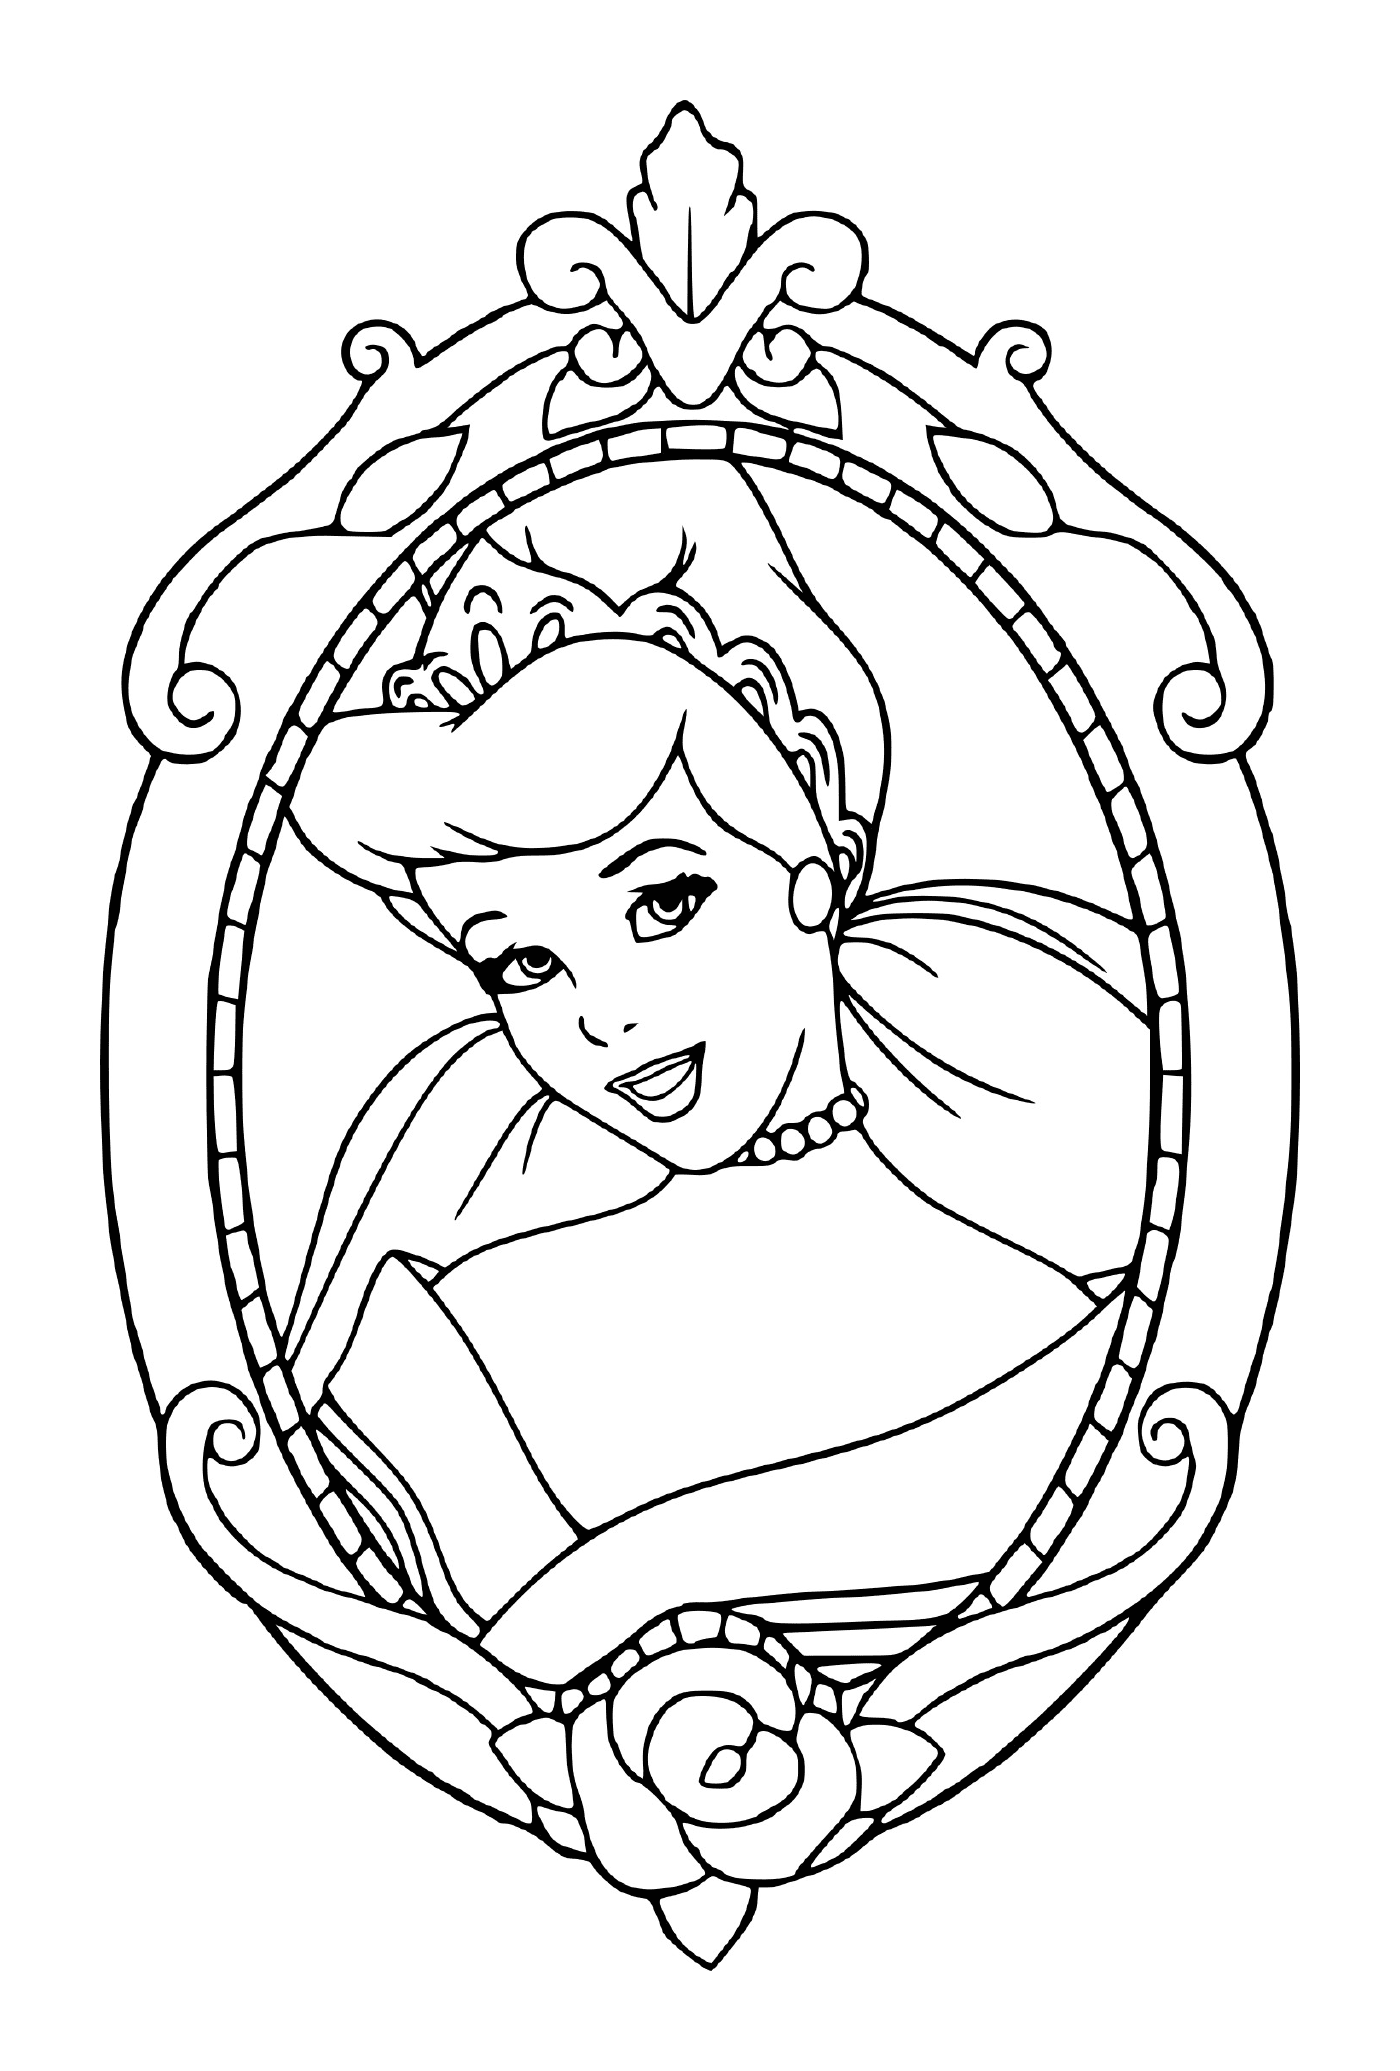  Gerahmtes Porträt von Cinderellas Gesicht 